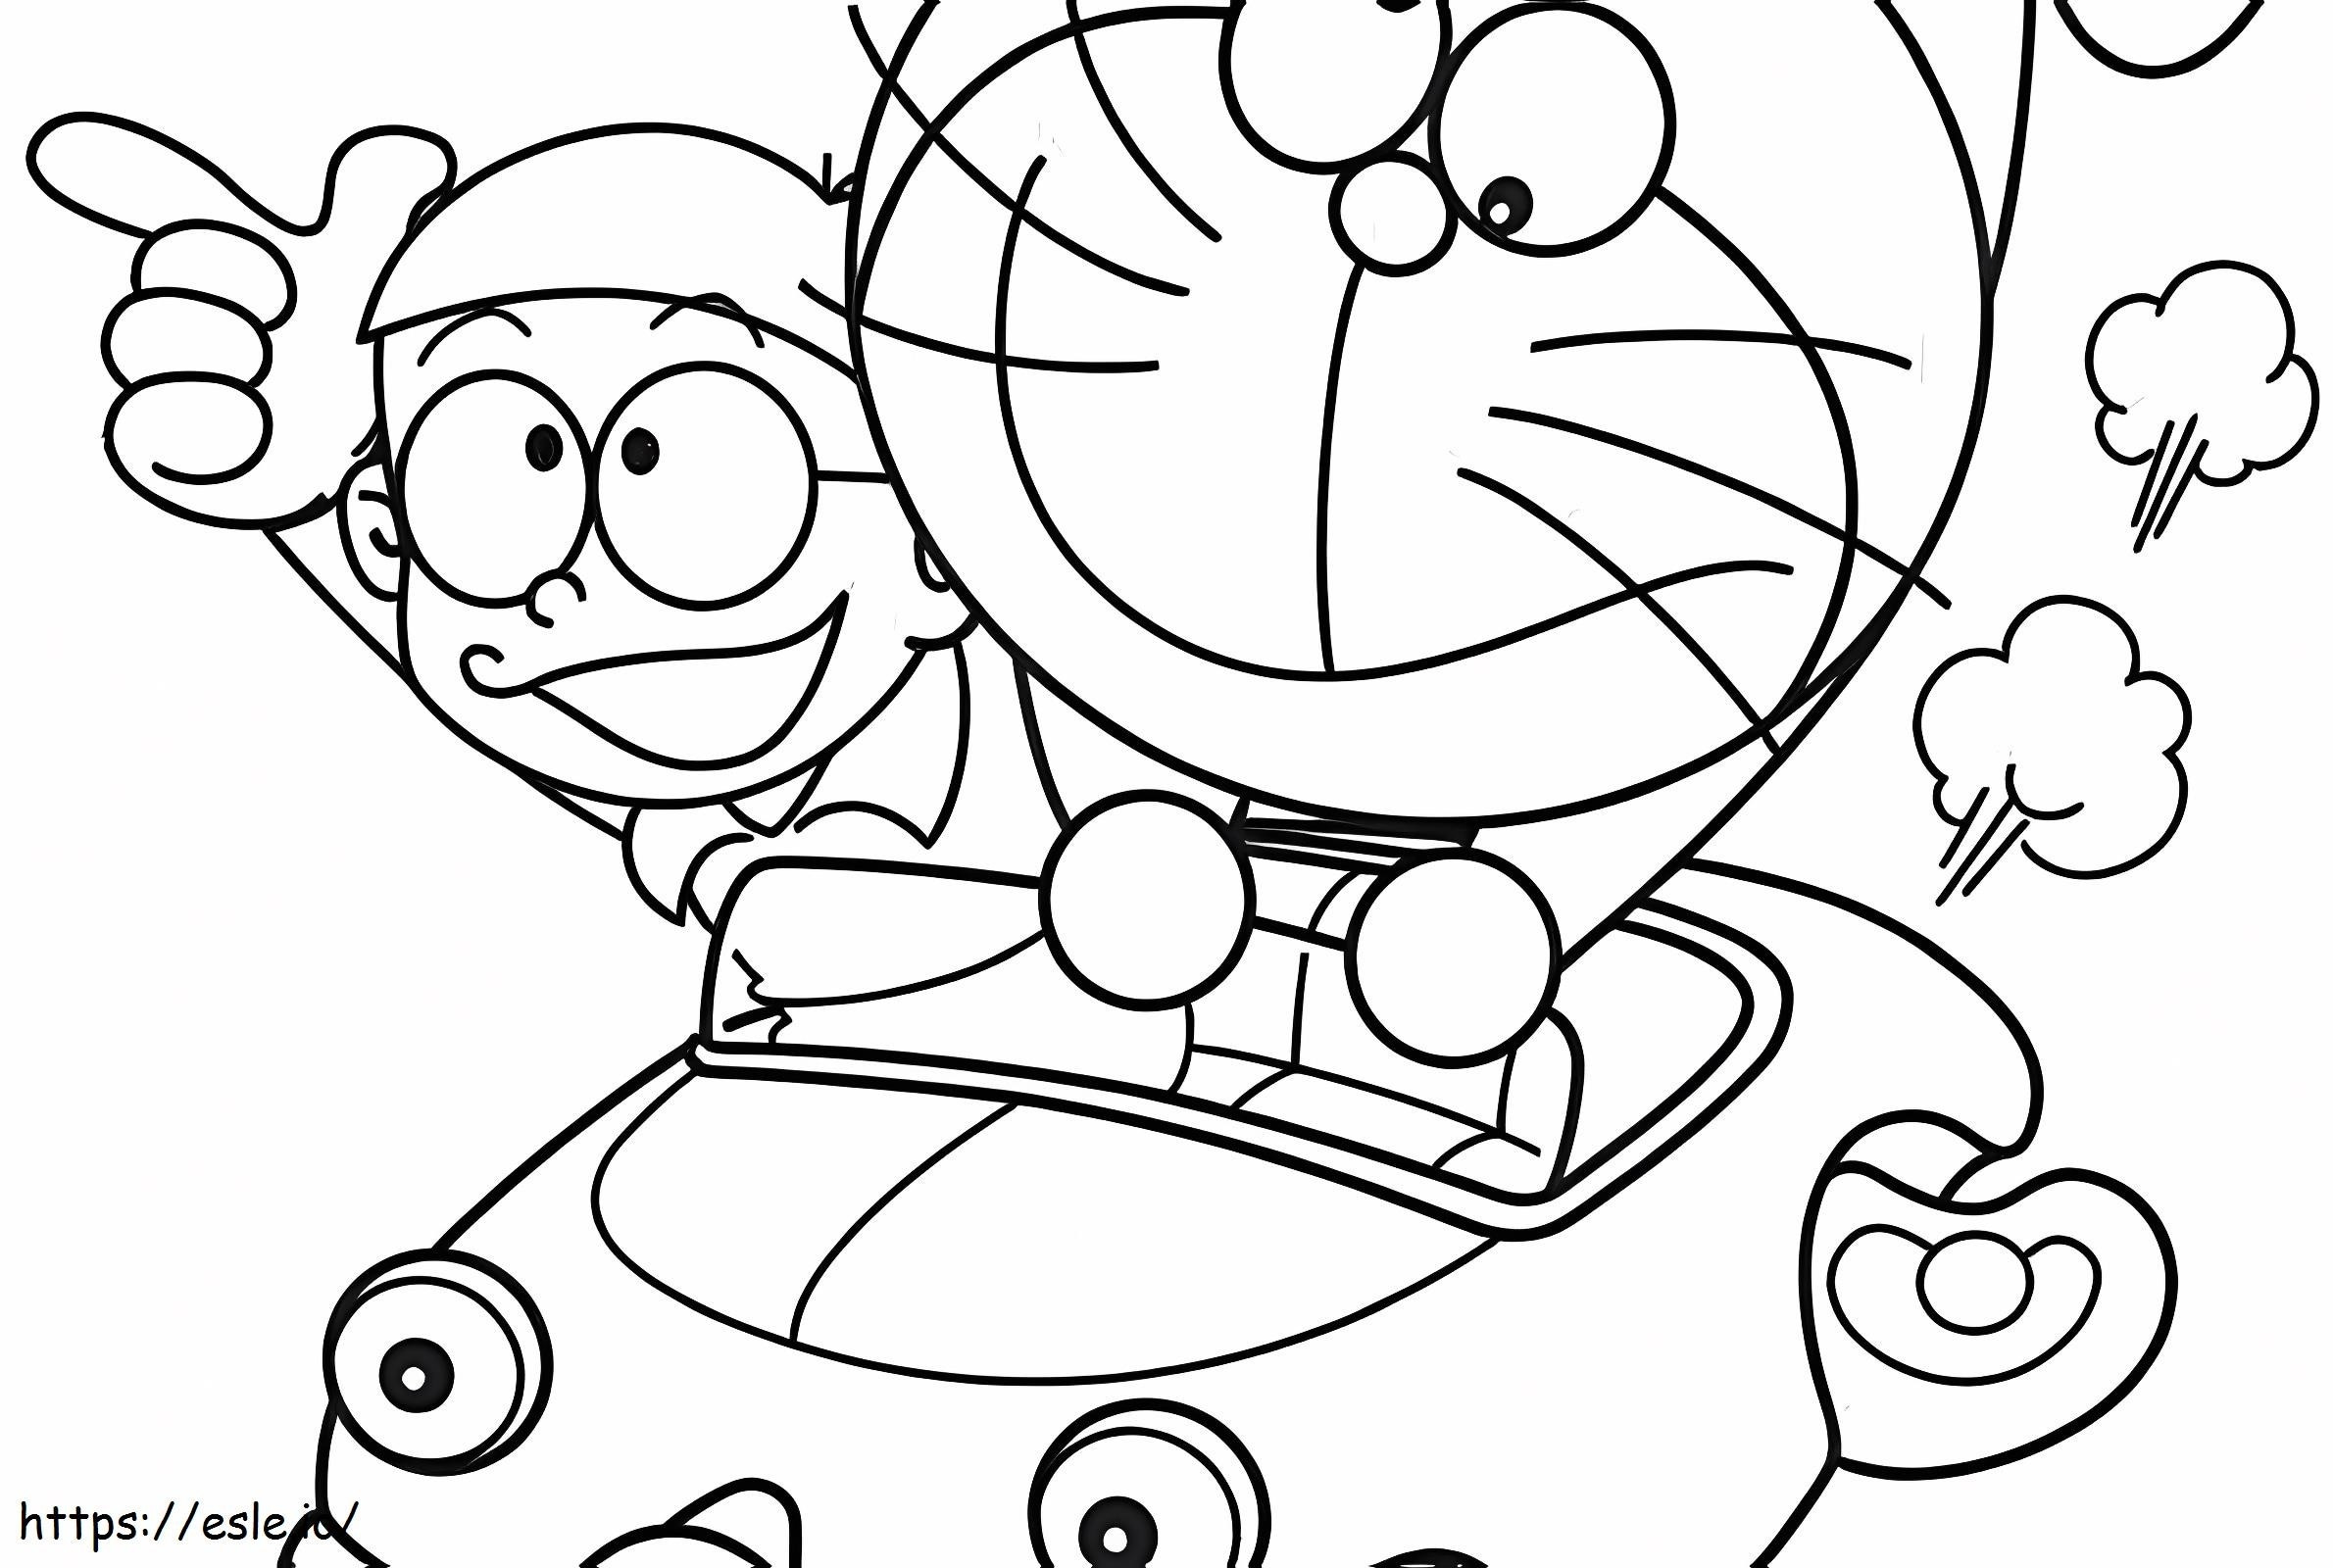 Nobita i Doraemon prowadzą kolorowanka